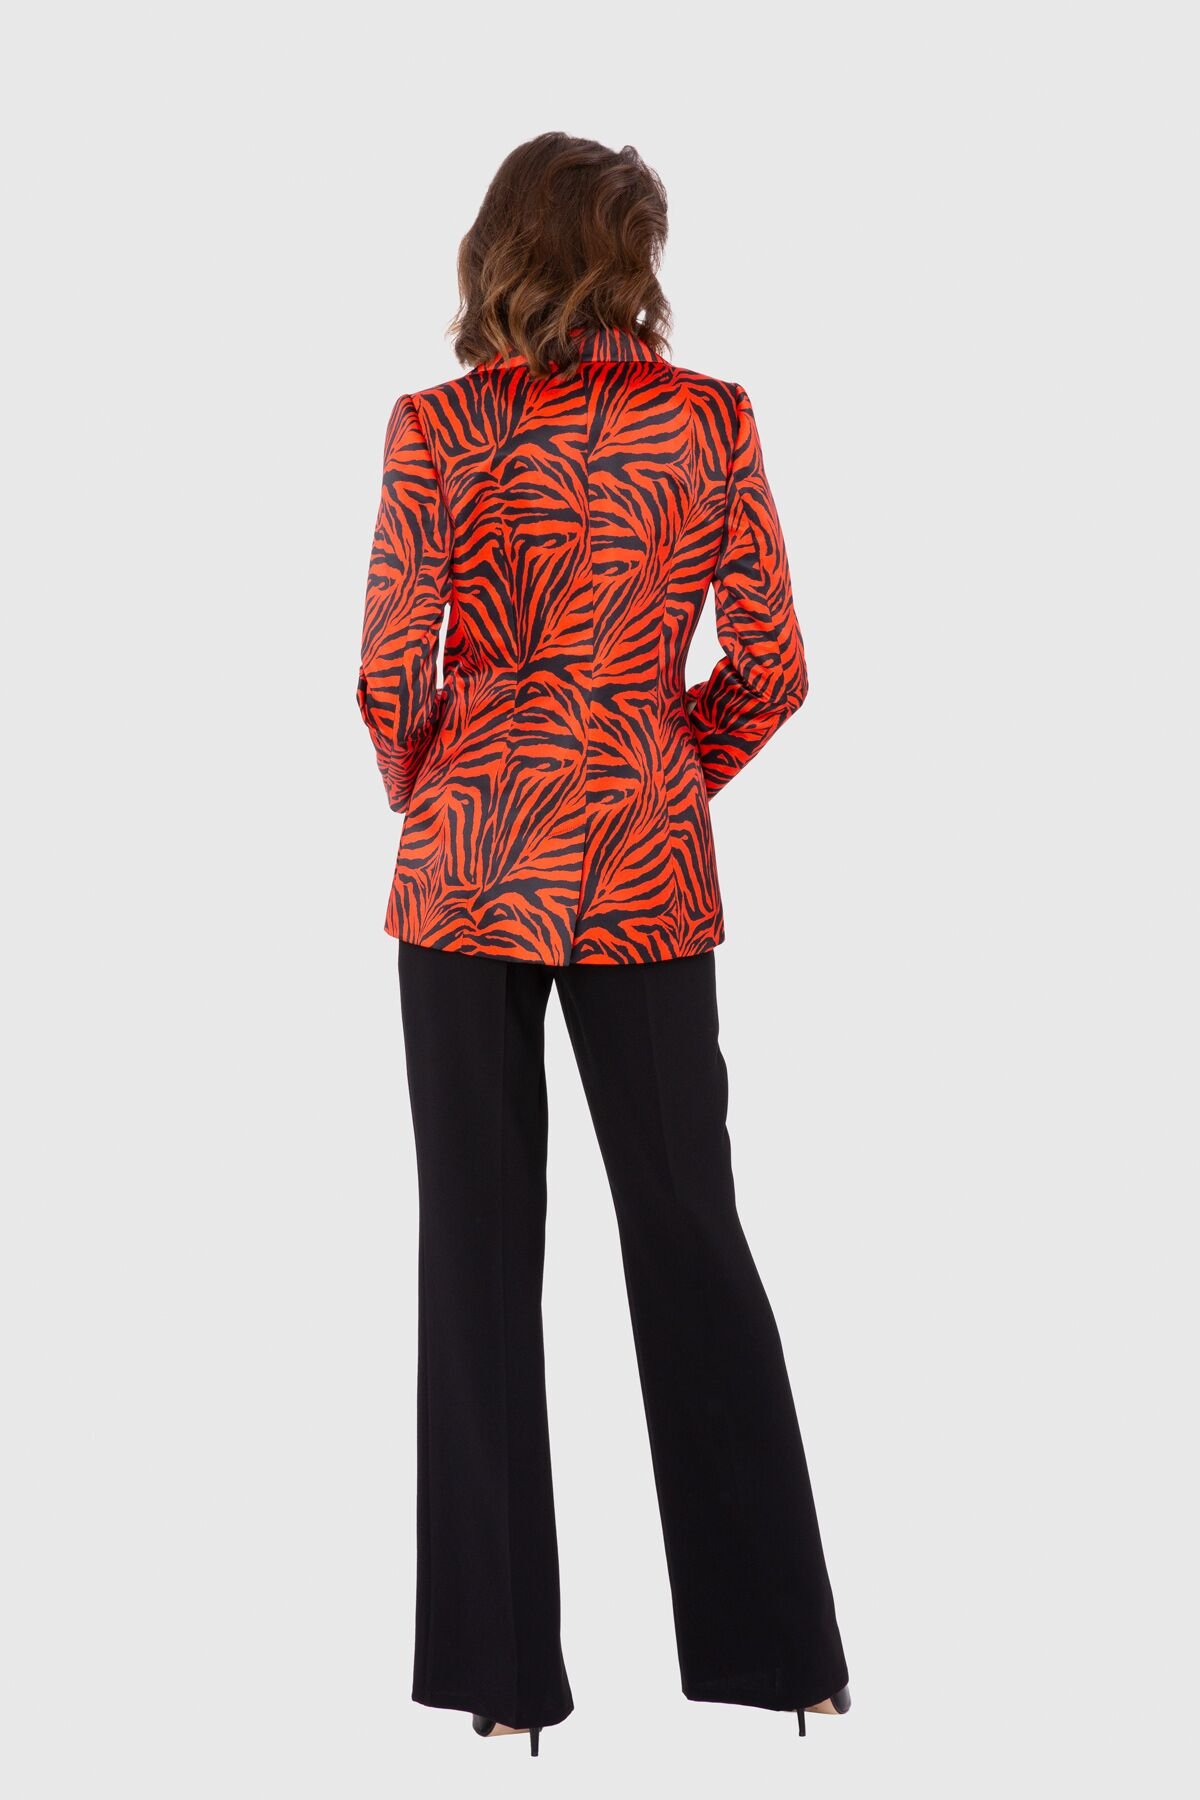 Zebra Desenli Kontrast Dökümlü Krep Pantalonlu Kırmızı Takım